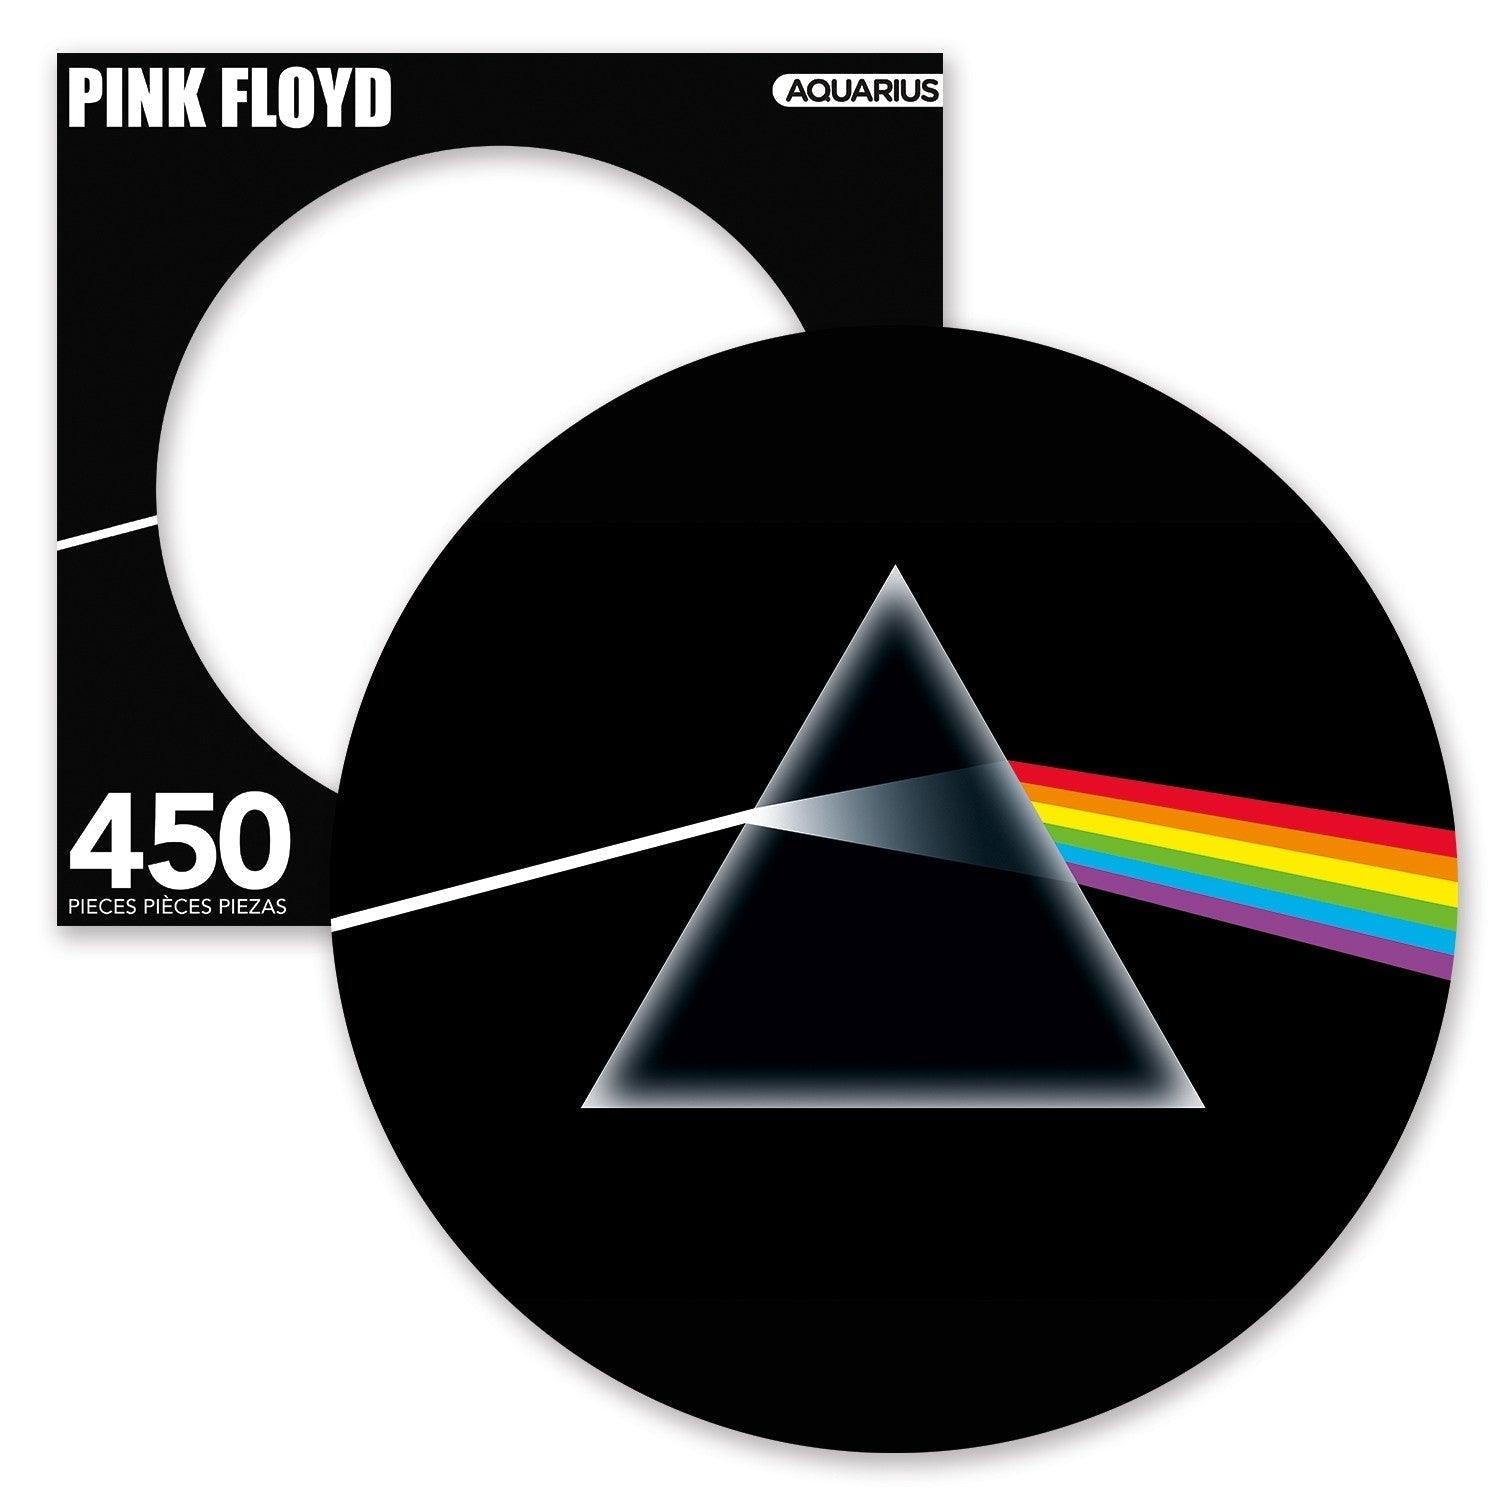 VR-84727 Aquarius Puzzle Pink Floyd Dark Side of the Moon Picture Disc Puzzle 450 pieces - Aquarius - Titan Pop Culture